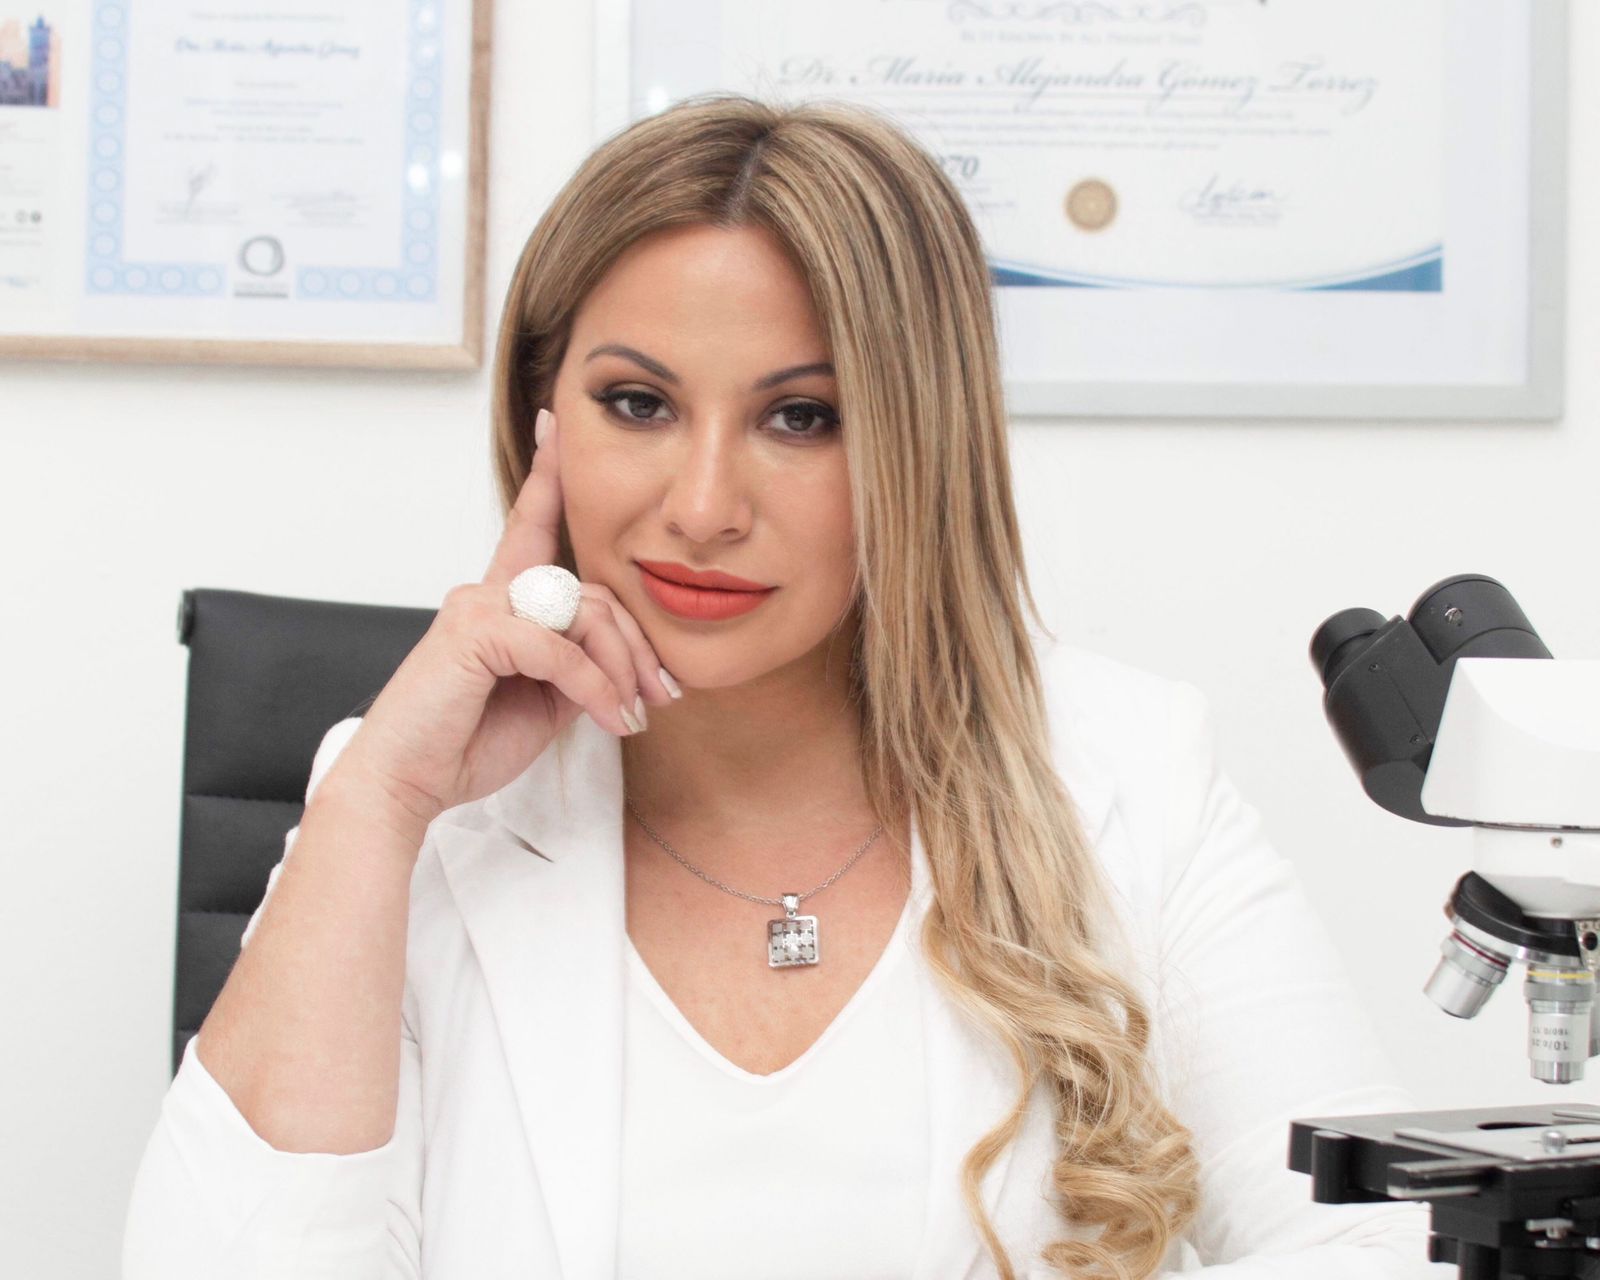 Es experta en medicina funcional y desembarca en Funes con exclusiva clínica